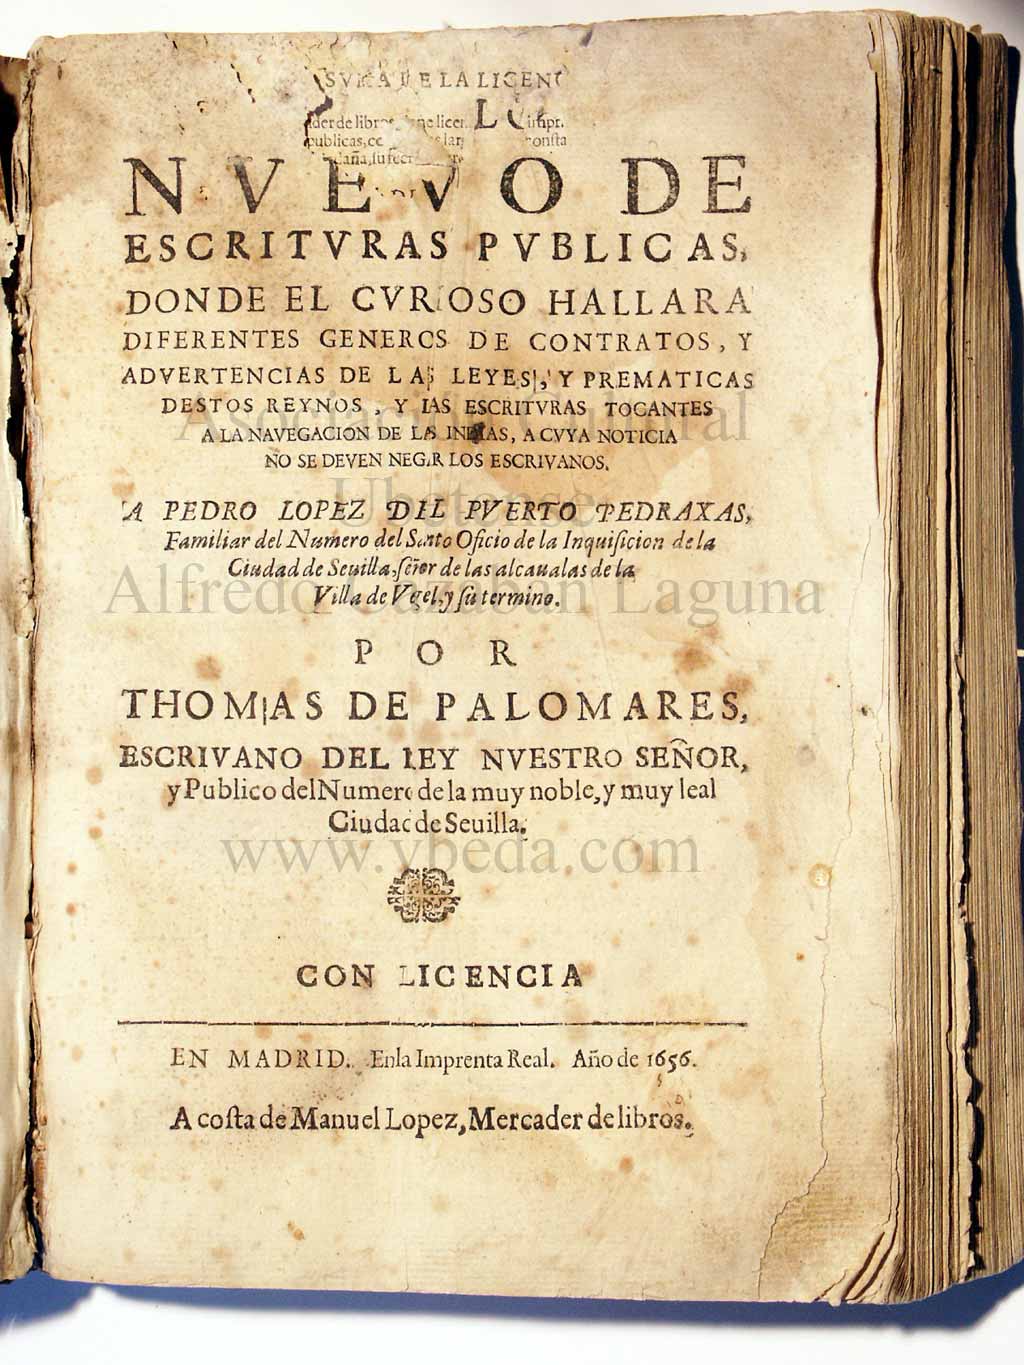 Estilo nuevo de escrituras pblicas/Thomas de Palomares